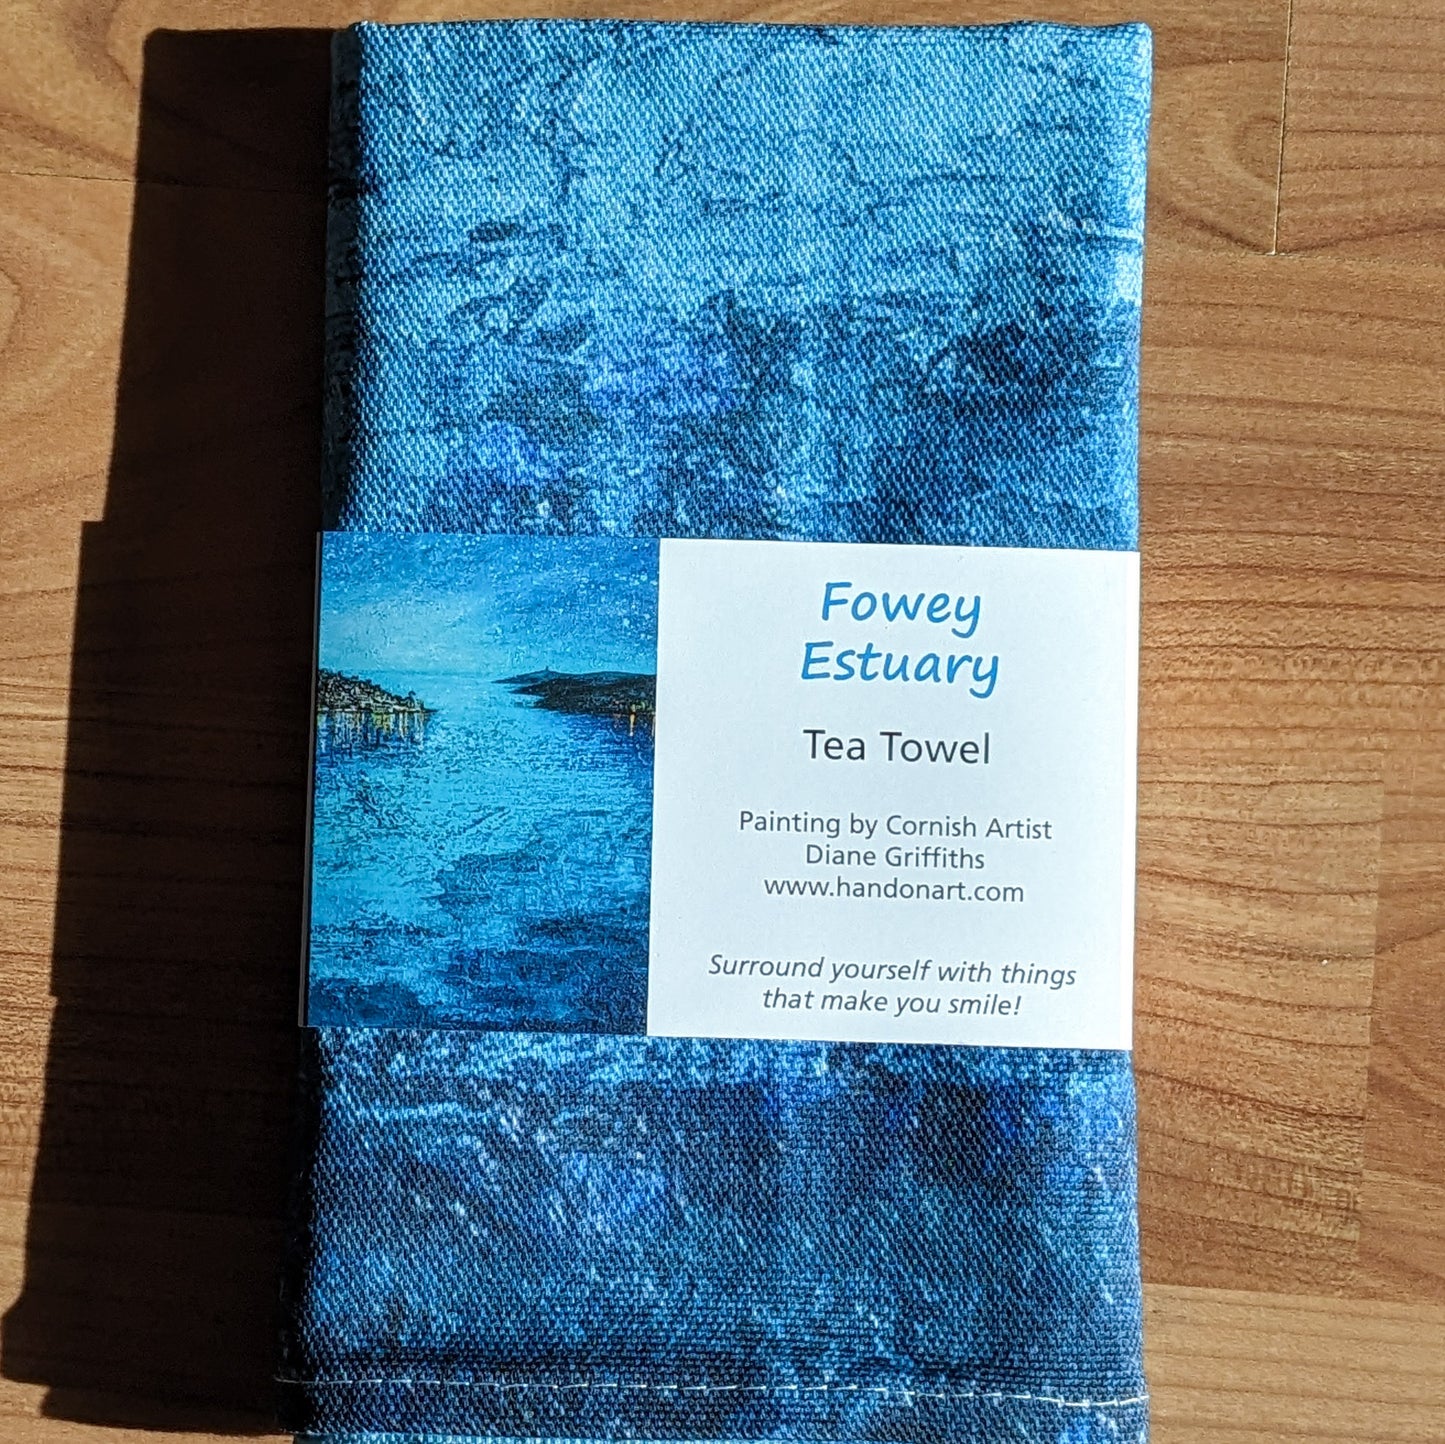 Fowey Evening Estuary Tea Towel